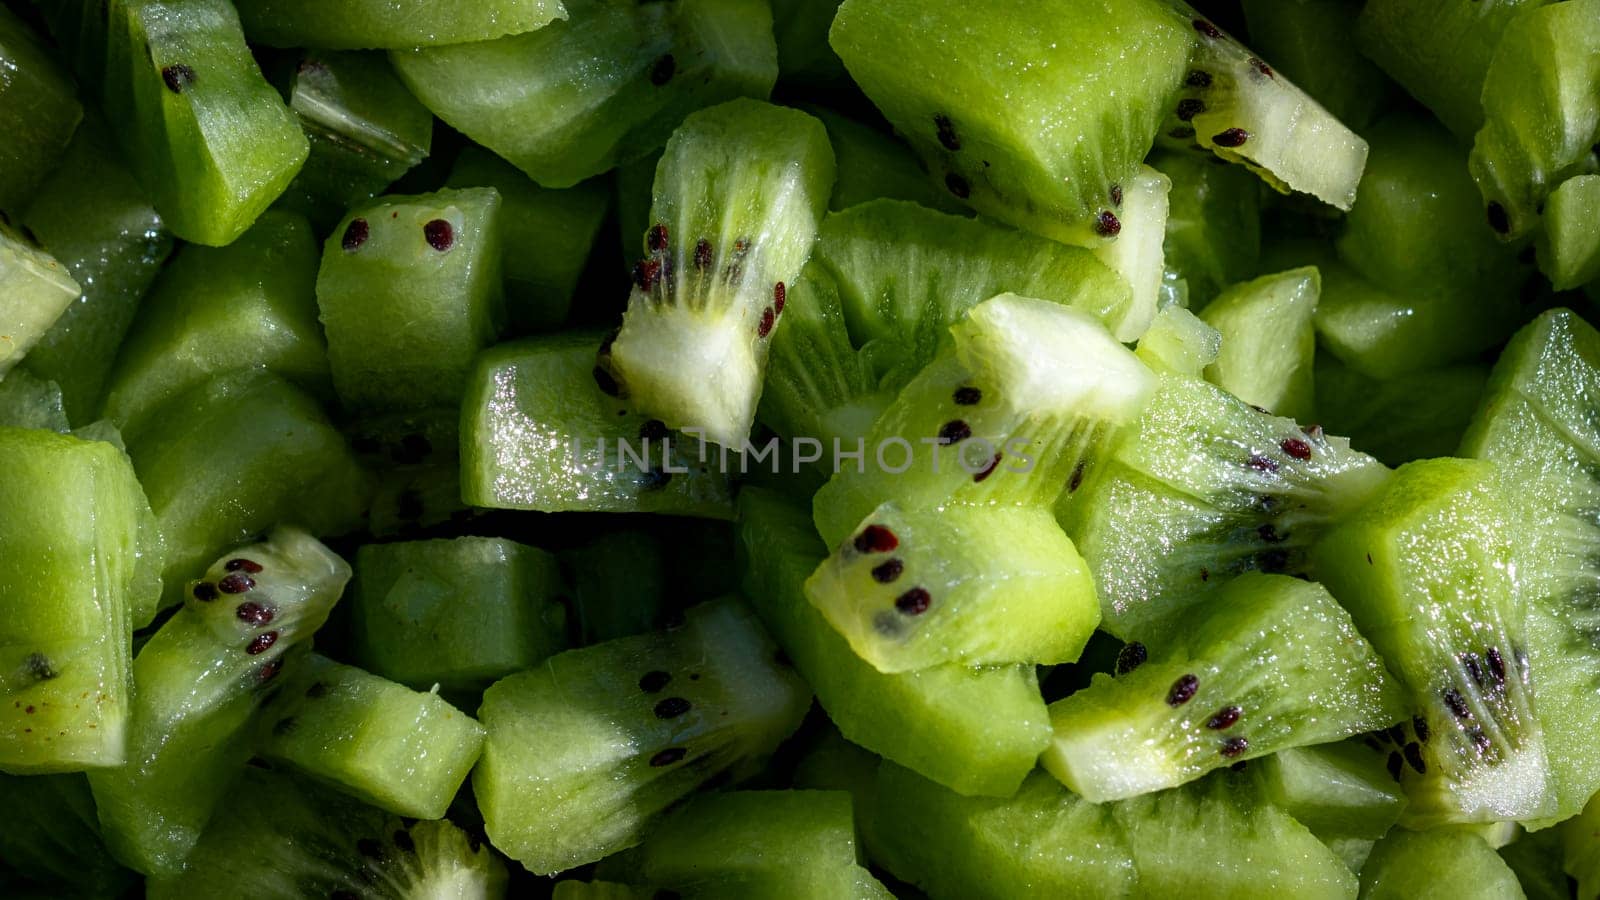 Ripe kiwi fruit. Detail of chopped exotic kiwi fruits used for desserts